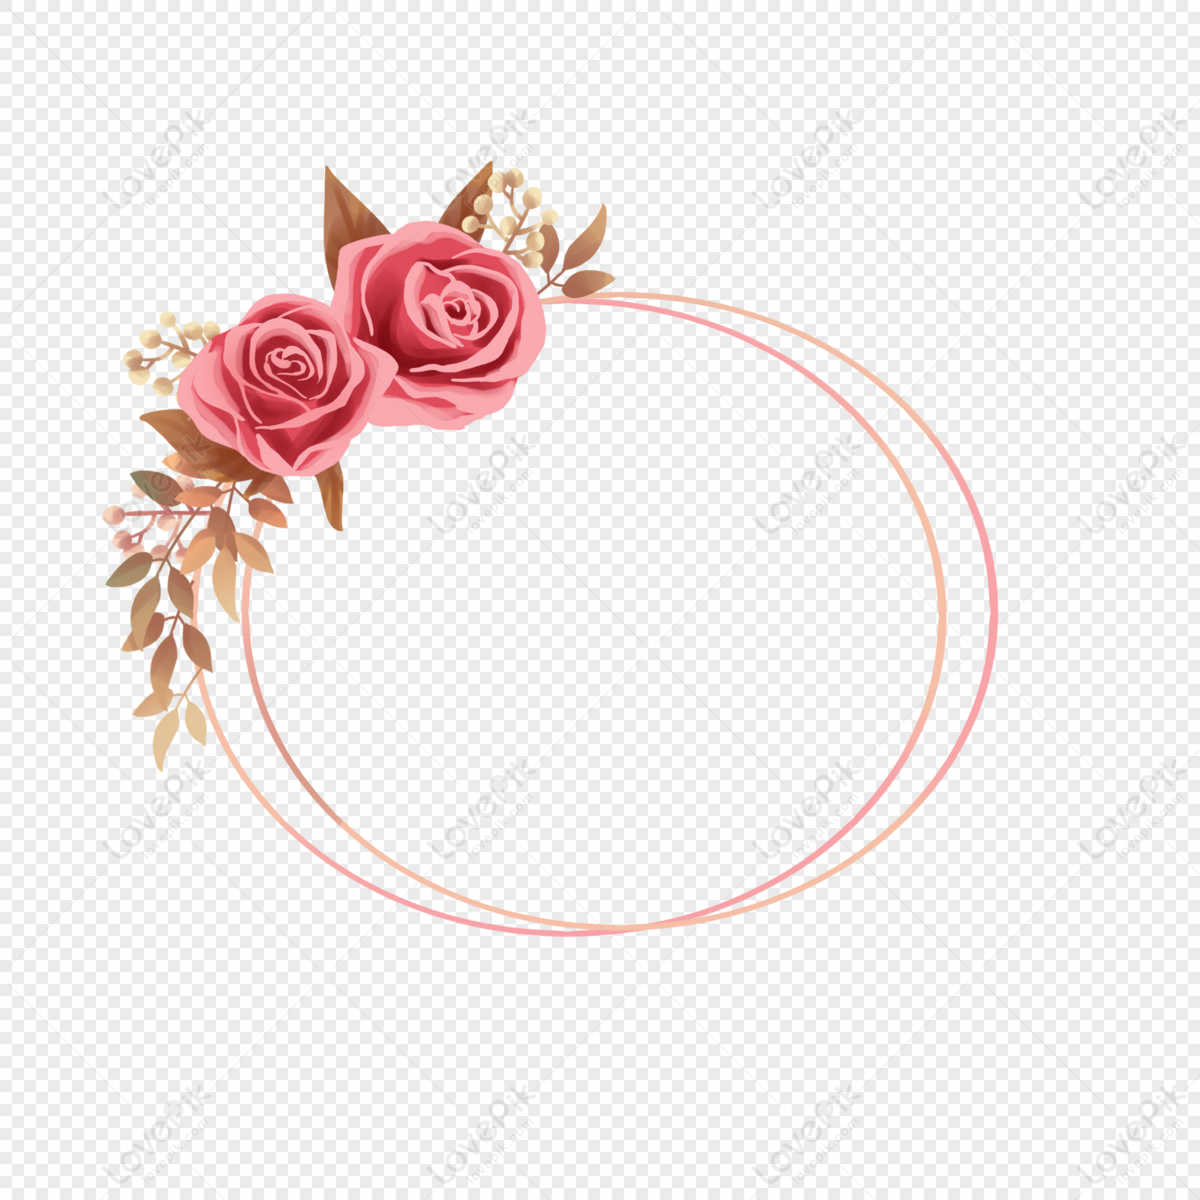 Sự kết hợp giữa hoa hồng đỏ và viền PNG tạo nên một hình ảnh đẹp mắt và sang trọng. Hãy trang trí cho màn hình của bạn bằng những ảnh hoa hồng đỏ viền PNG để tăng thêm không gian yêu thương.